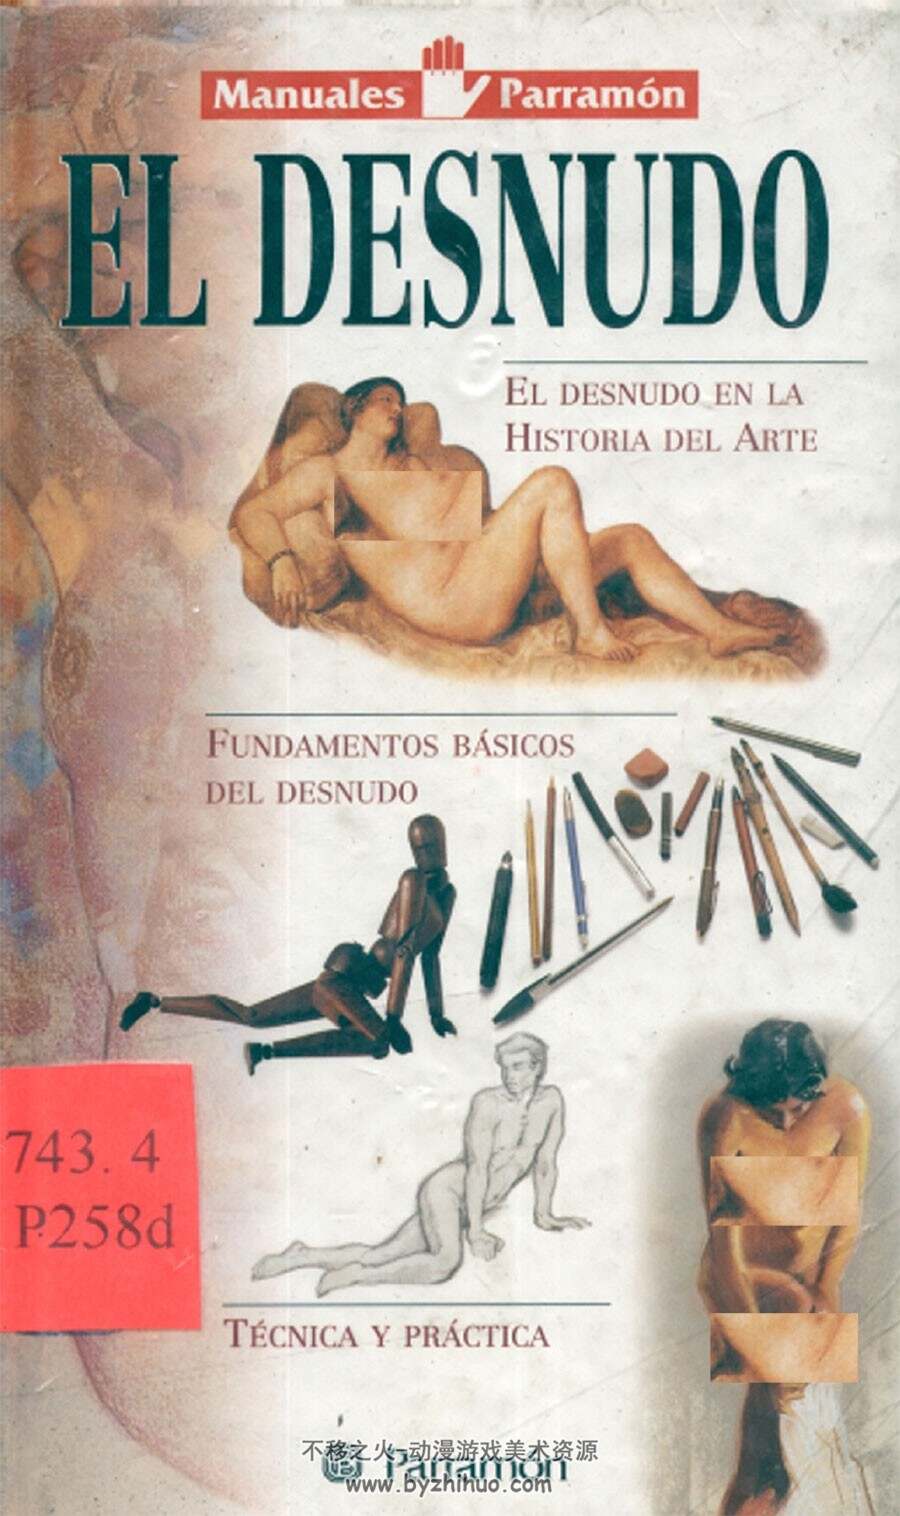 El Desnudo - El Desnudo en la Historia del Arte 裸体-艺术史上的裸体 艺术鉴赏